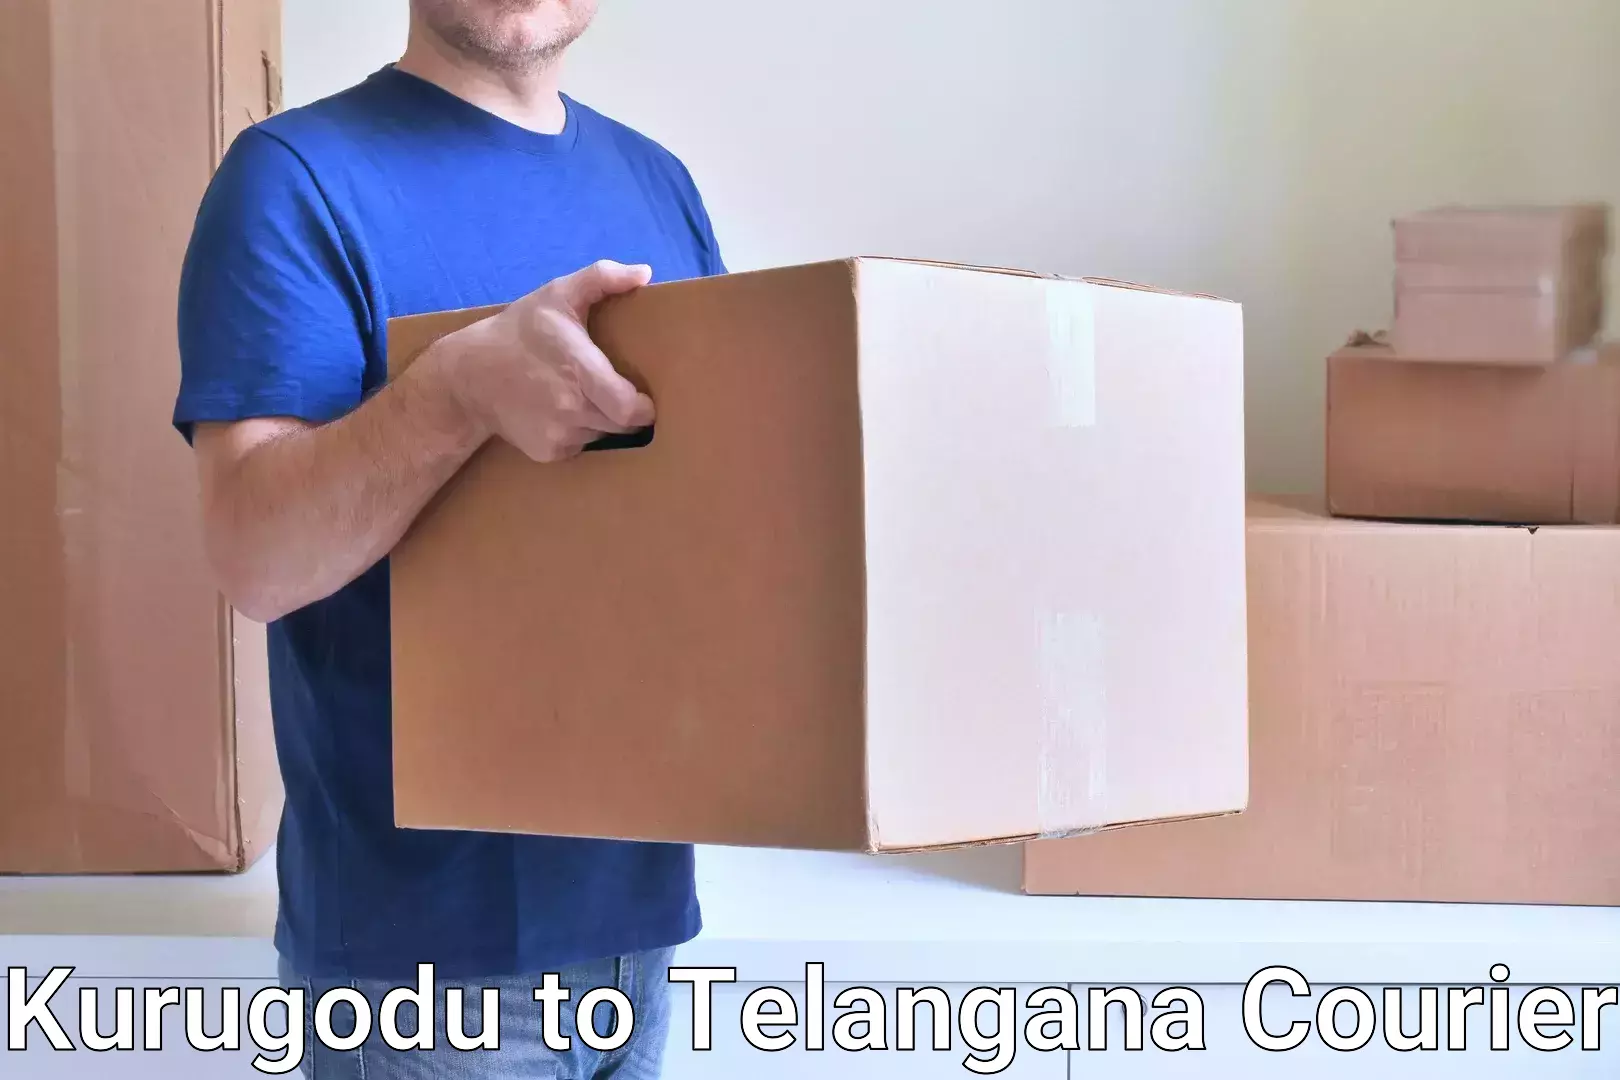 Modern courier technology Kurugodu to Dornakal